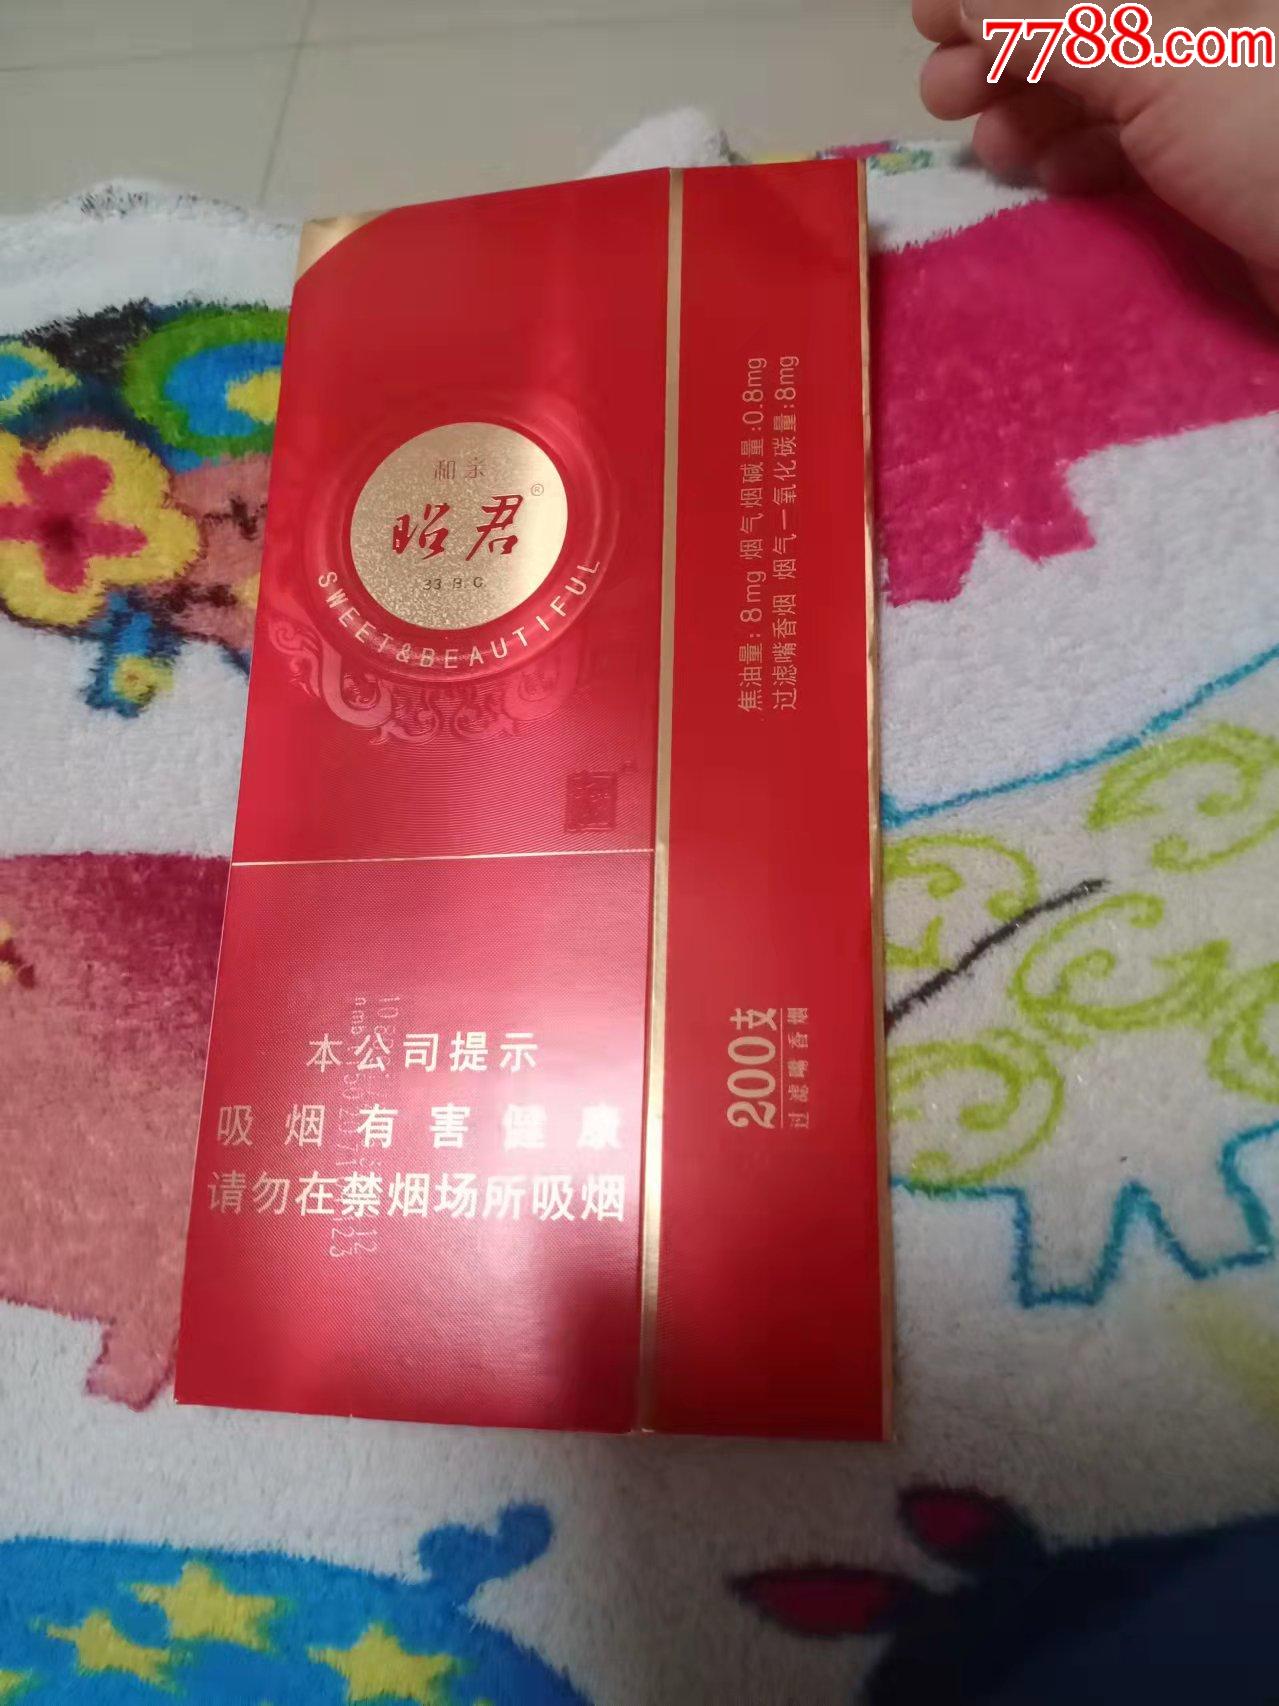 红色包装的昭君香烟图片